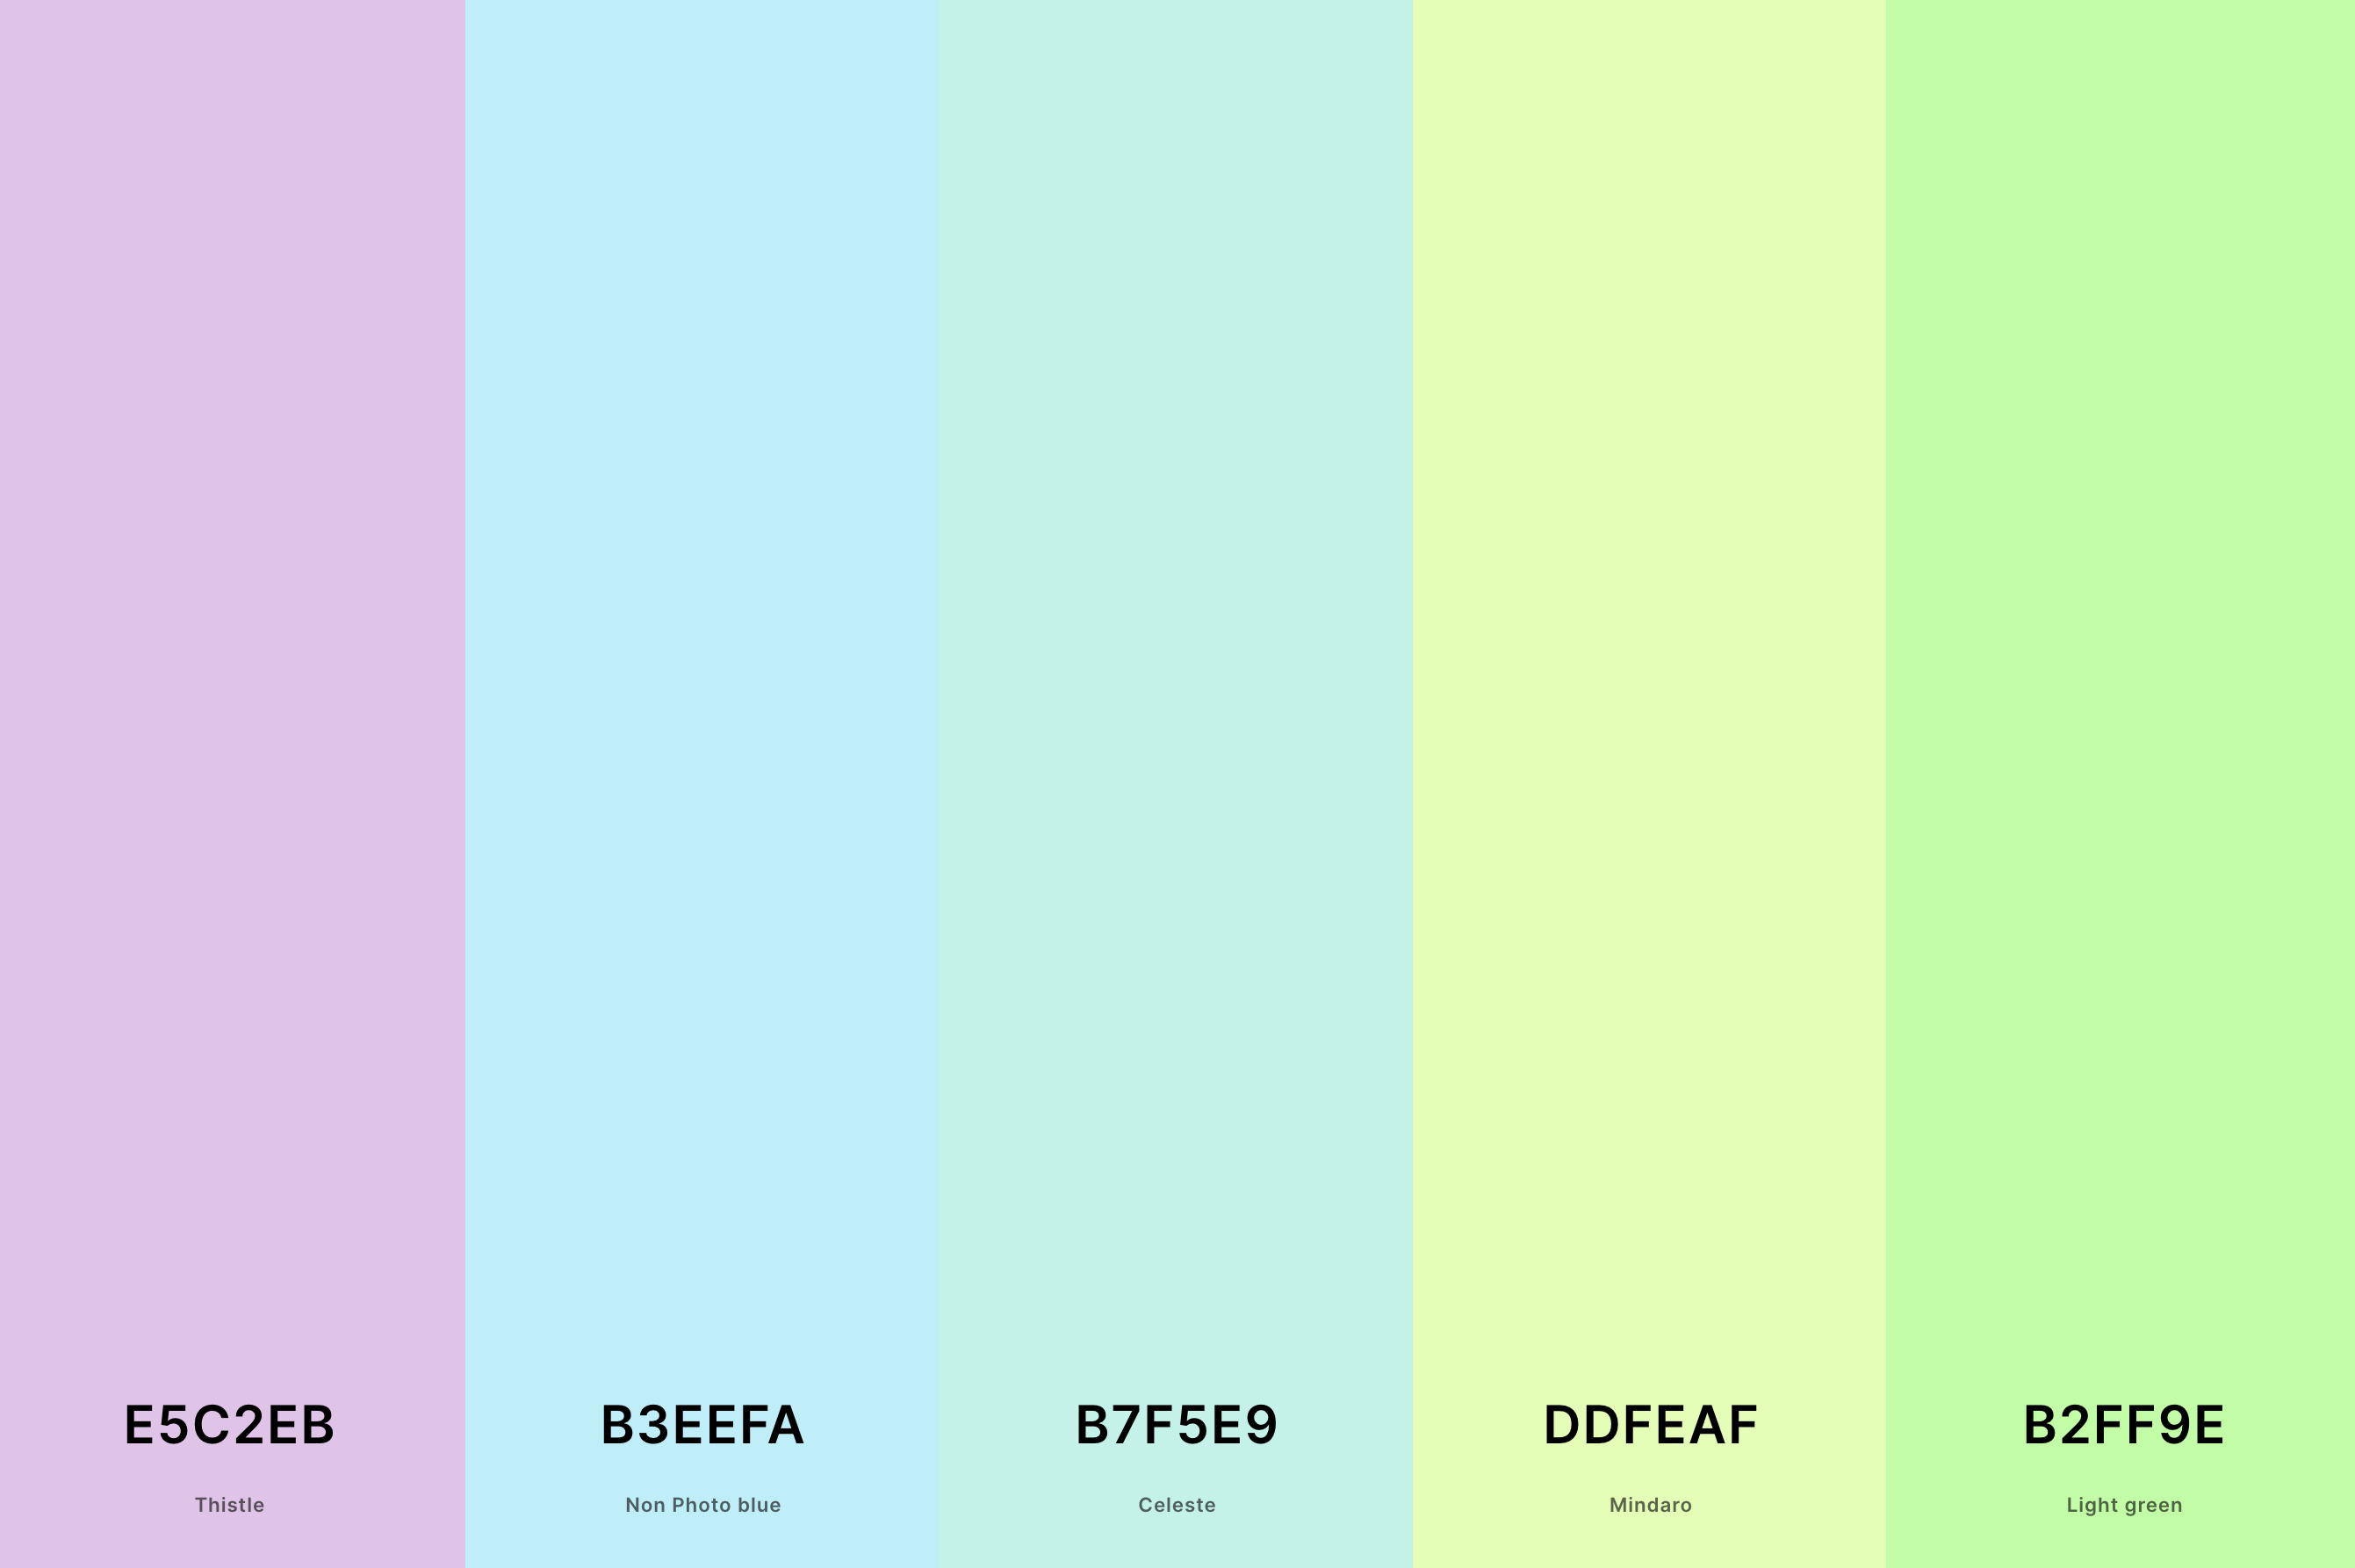 21. Pastel Turquoise Color Palette Color Palette with Thistle (Hex #E5C2EB) + Non Photo Blue (Hex #B3EEFA) + Celeste (Hex #B7F5E9) + Mindaro (Hex #DDFEAF) + Light Green (Hex #B2FF9E) Color Palette with Hex Codes